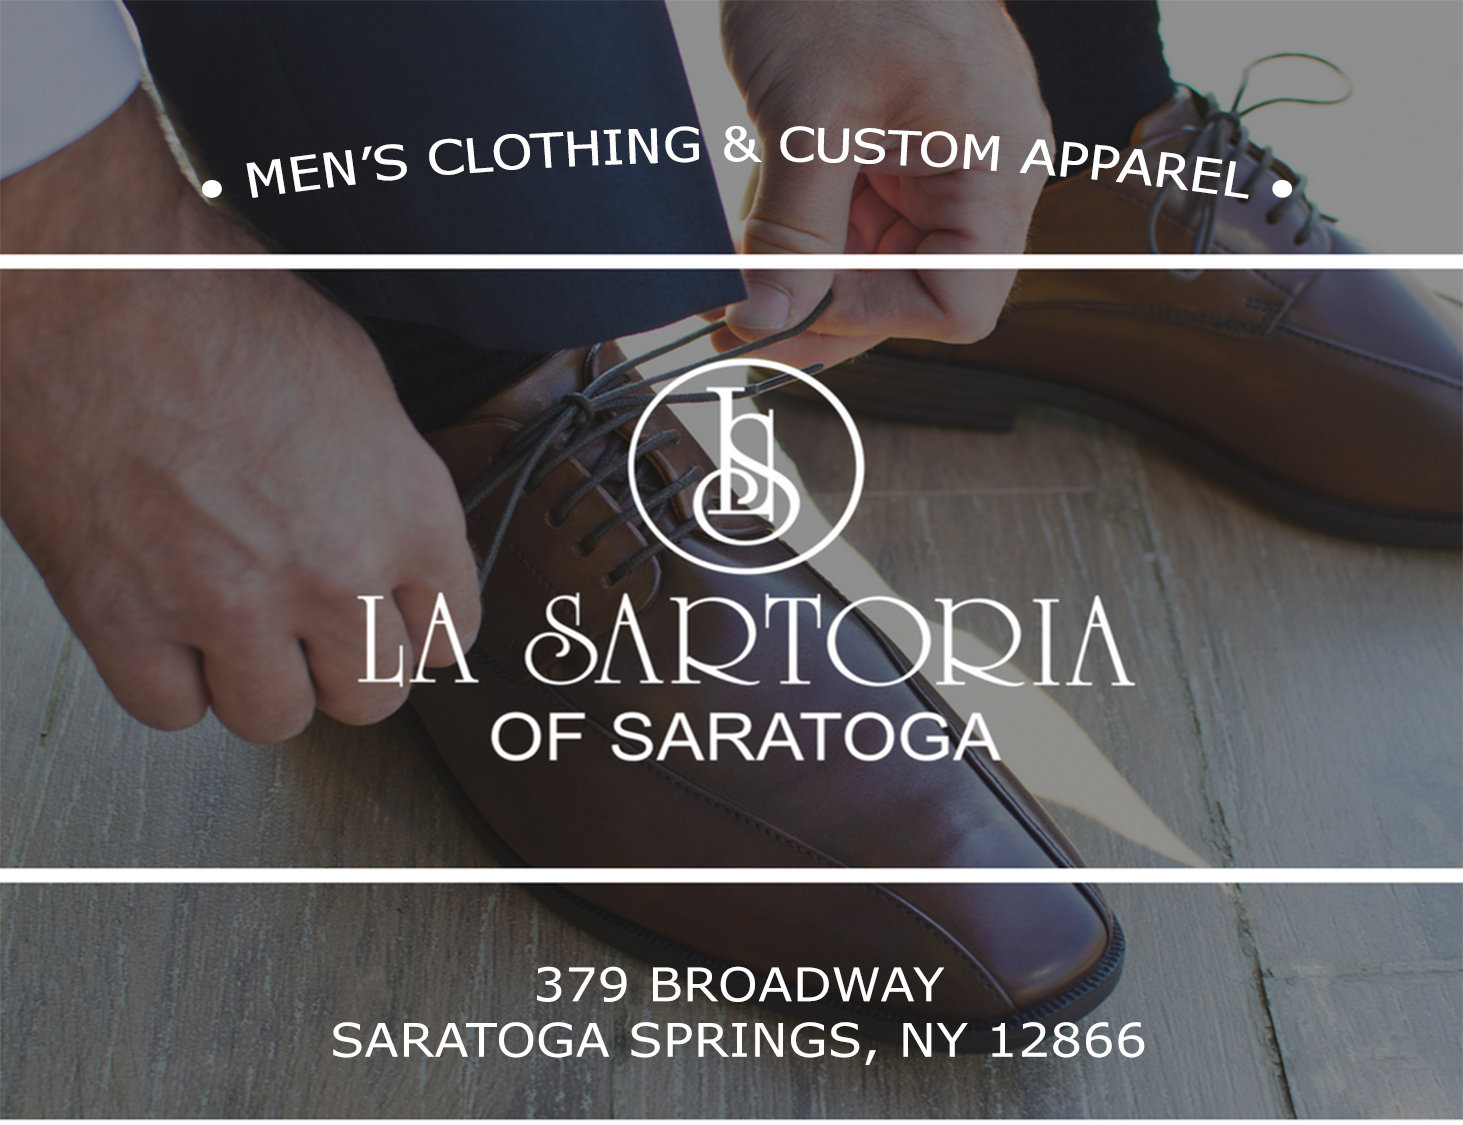 La Sartoria of Saratoga